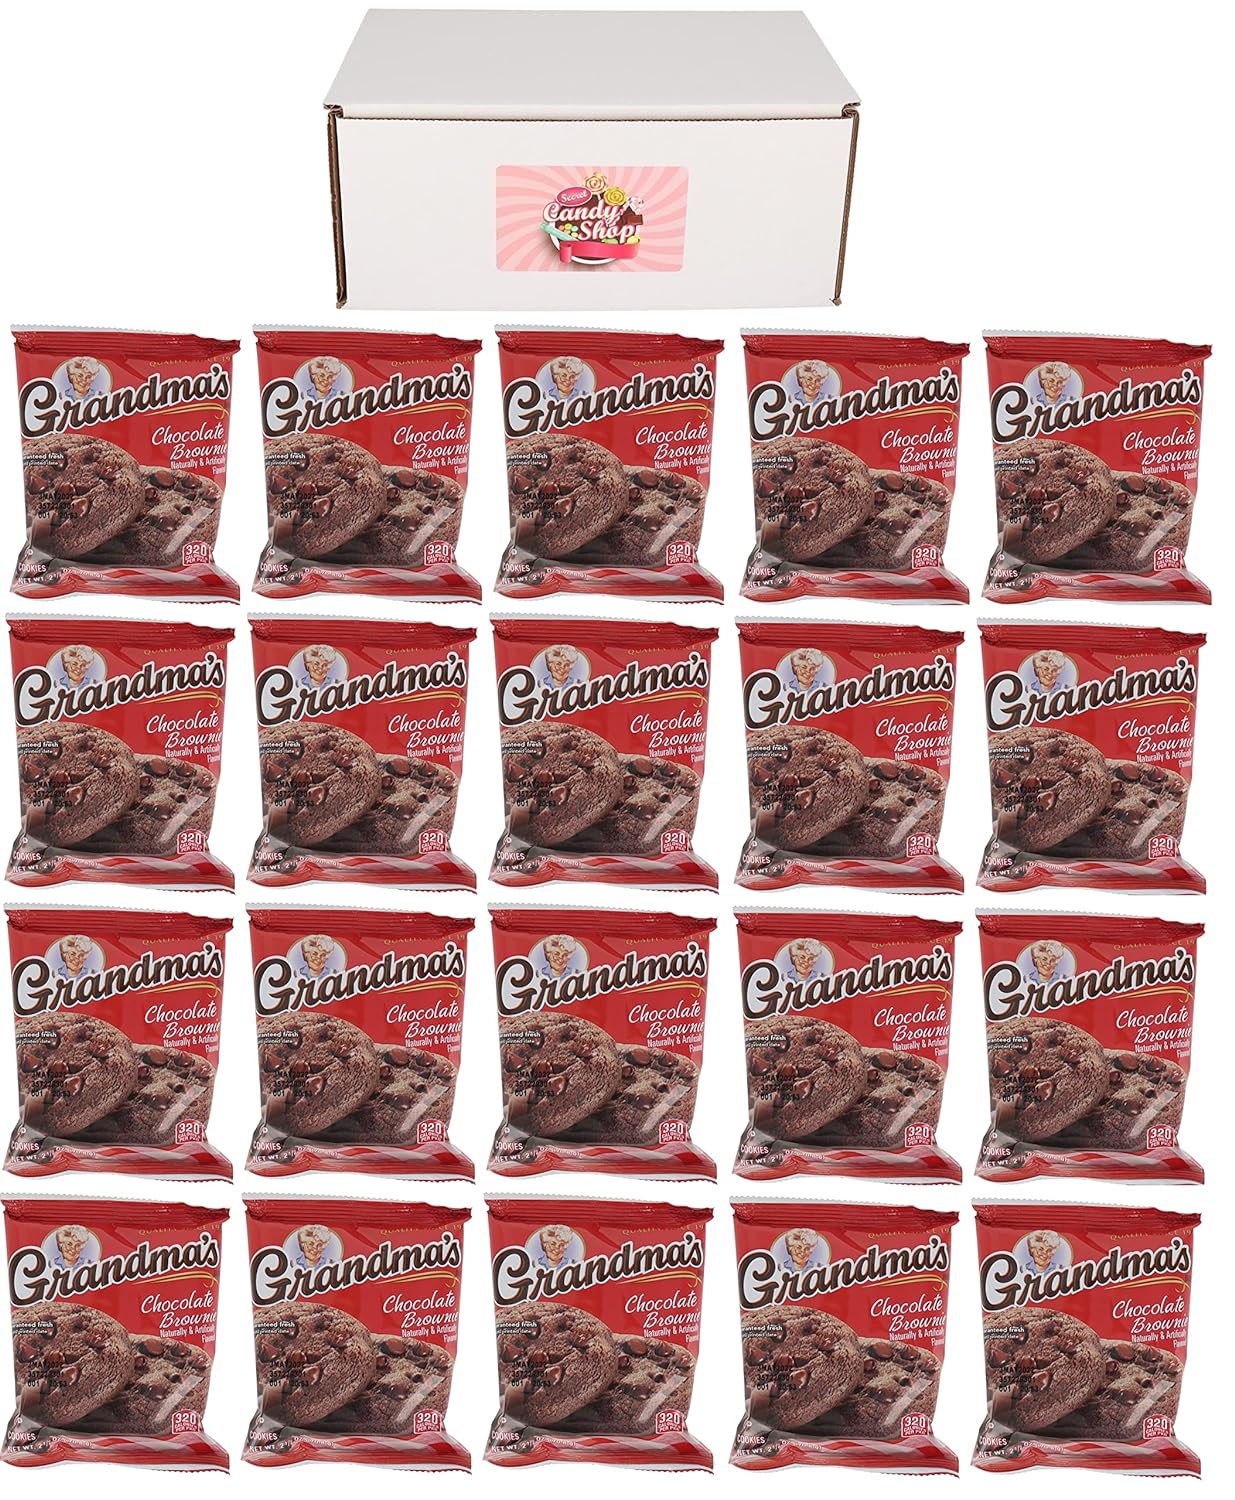 Grandma's Cookies In Box (Pack of 20, Total of 40 Cookies)